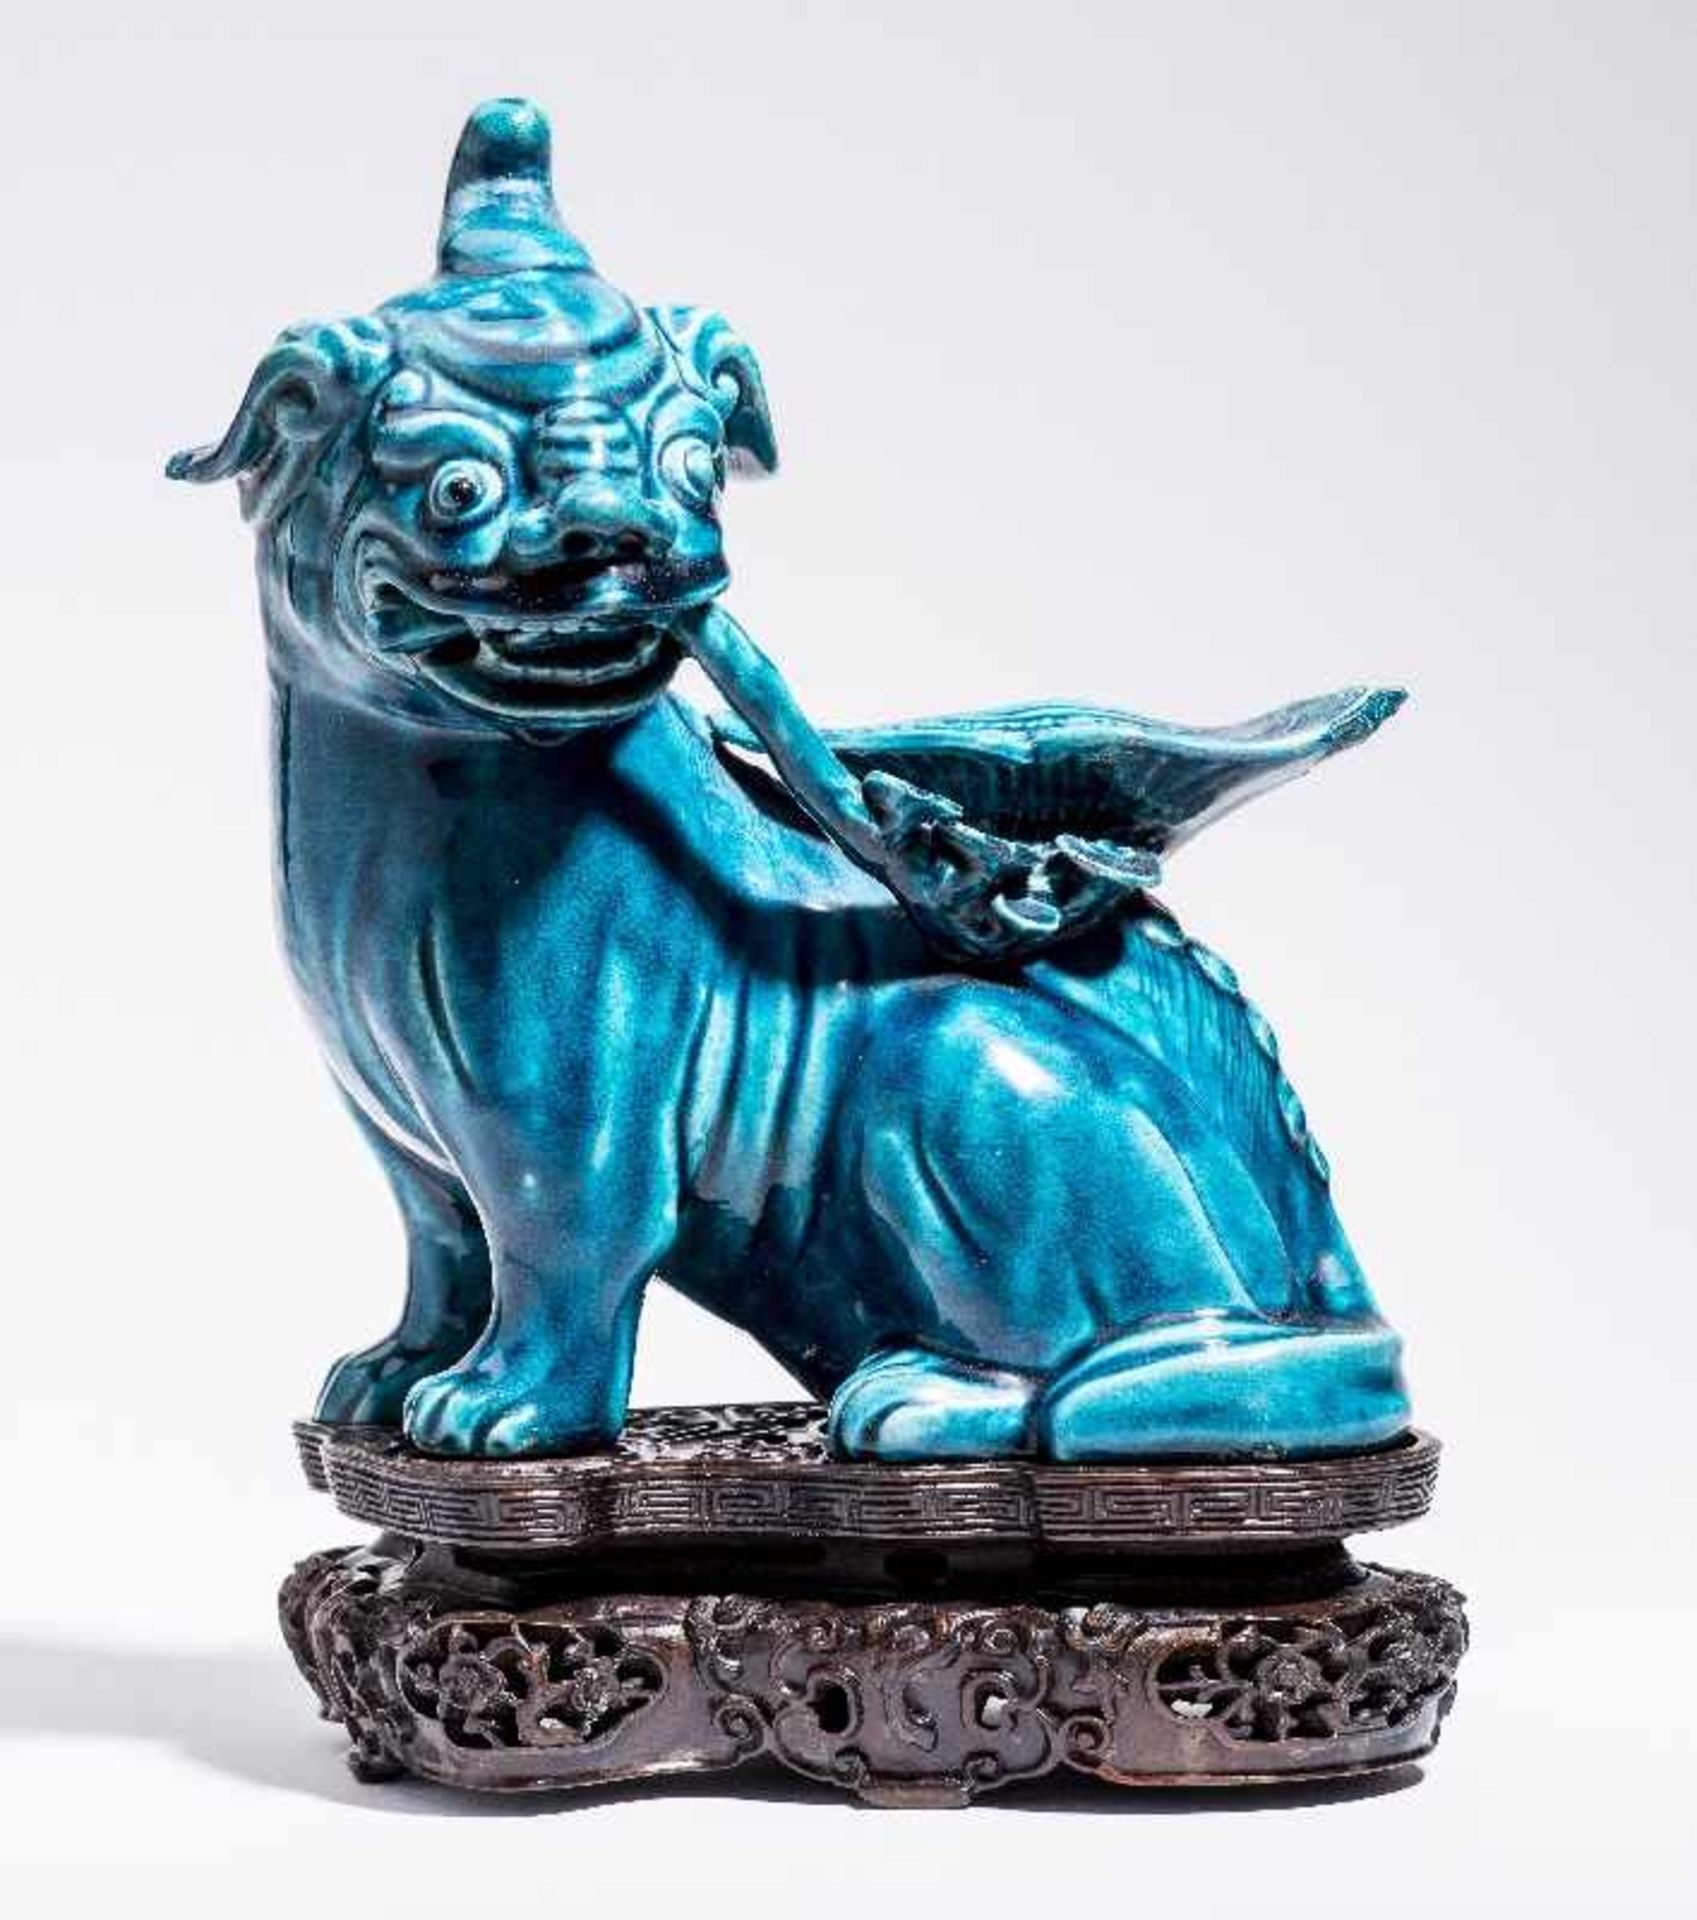 SITZENDES EINHORNPorzellan. China, Qing-Dynastie, 18. Jh. An dieser Porzellanskulptur des